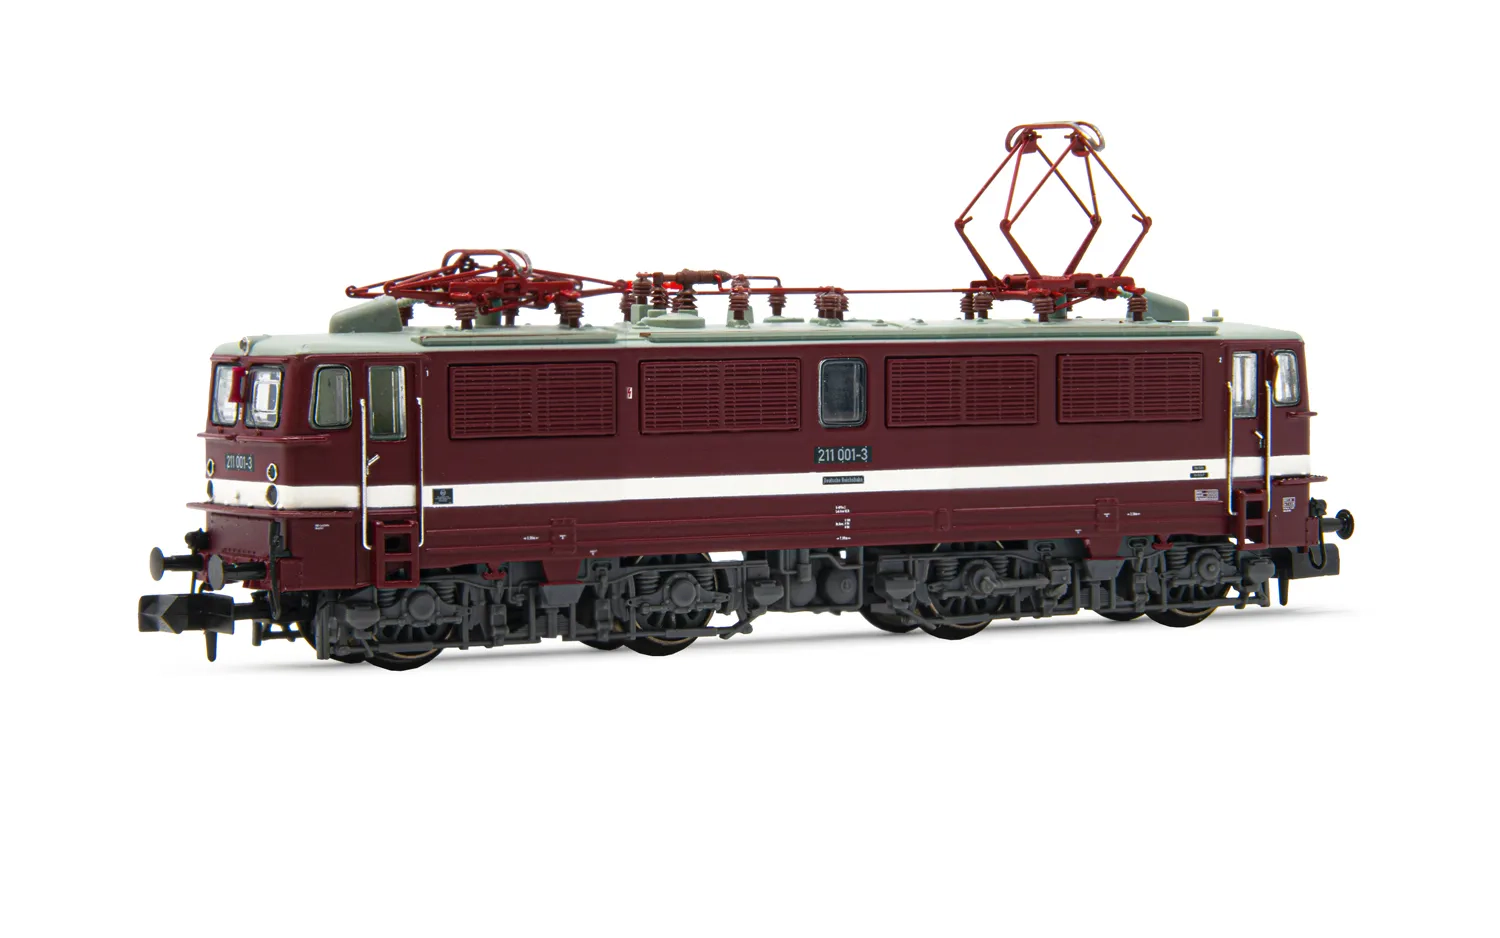 DR, locomotive électrique classe 211, livrée rouge avec ligne blanche de décoration épaisse, ép. IV